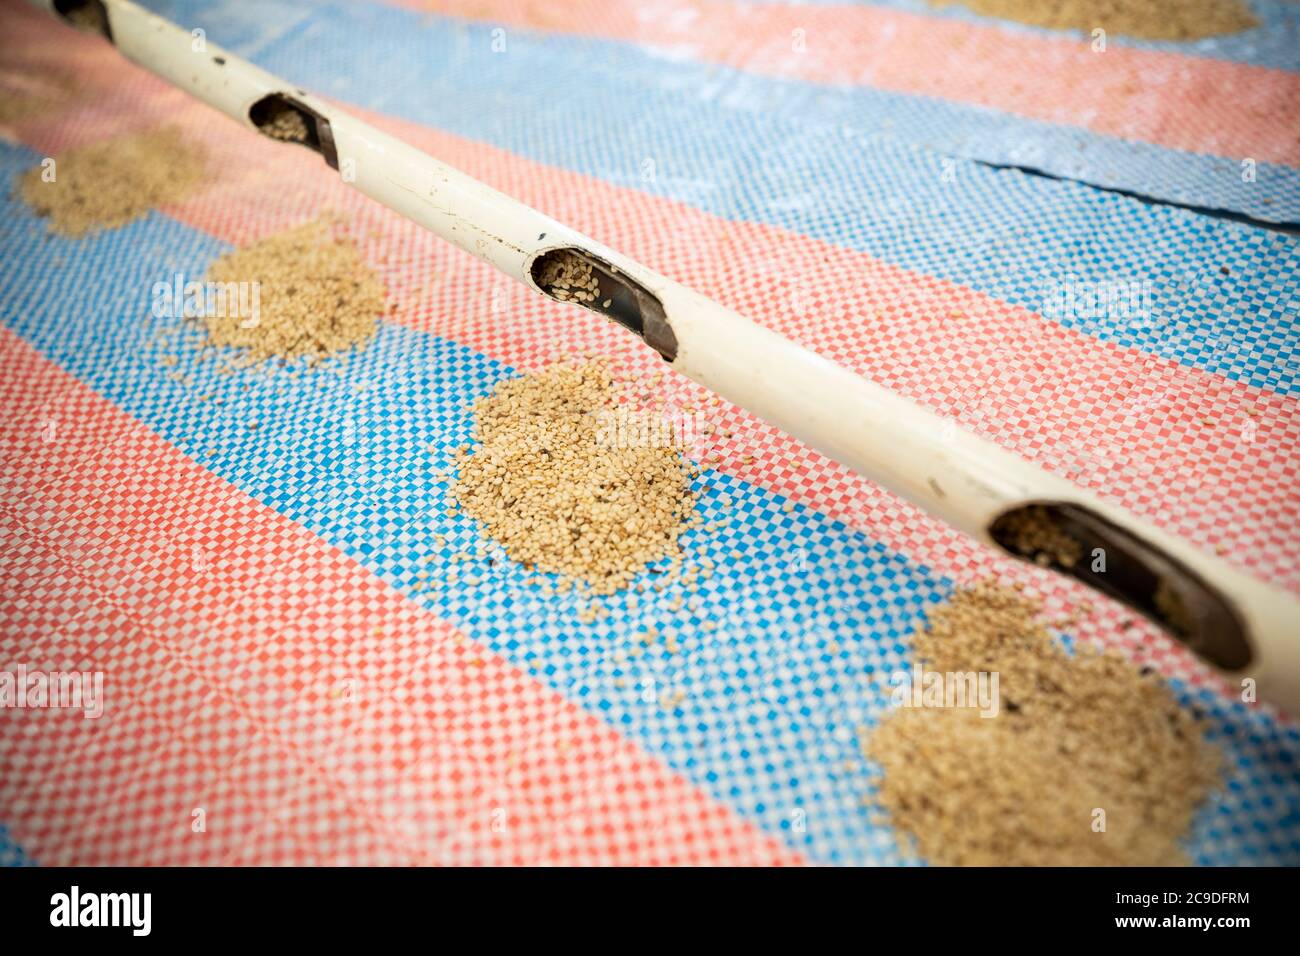 L'uso di un'asta di campionamento consente agli addetti al magazzino di campionare la qualità del sesamo in un sacco di tela di sacco in tutta la busta senza aprirlo. Regione di Boucle de Mouhoun, Burkina Faso, Africa occidentale. Foto Stock